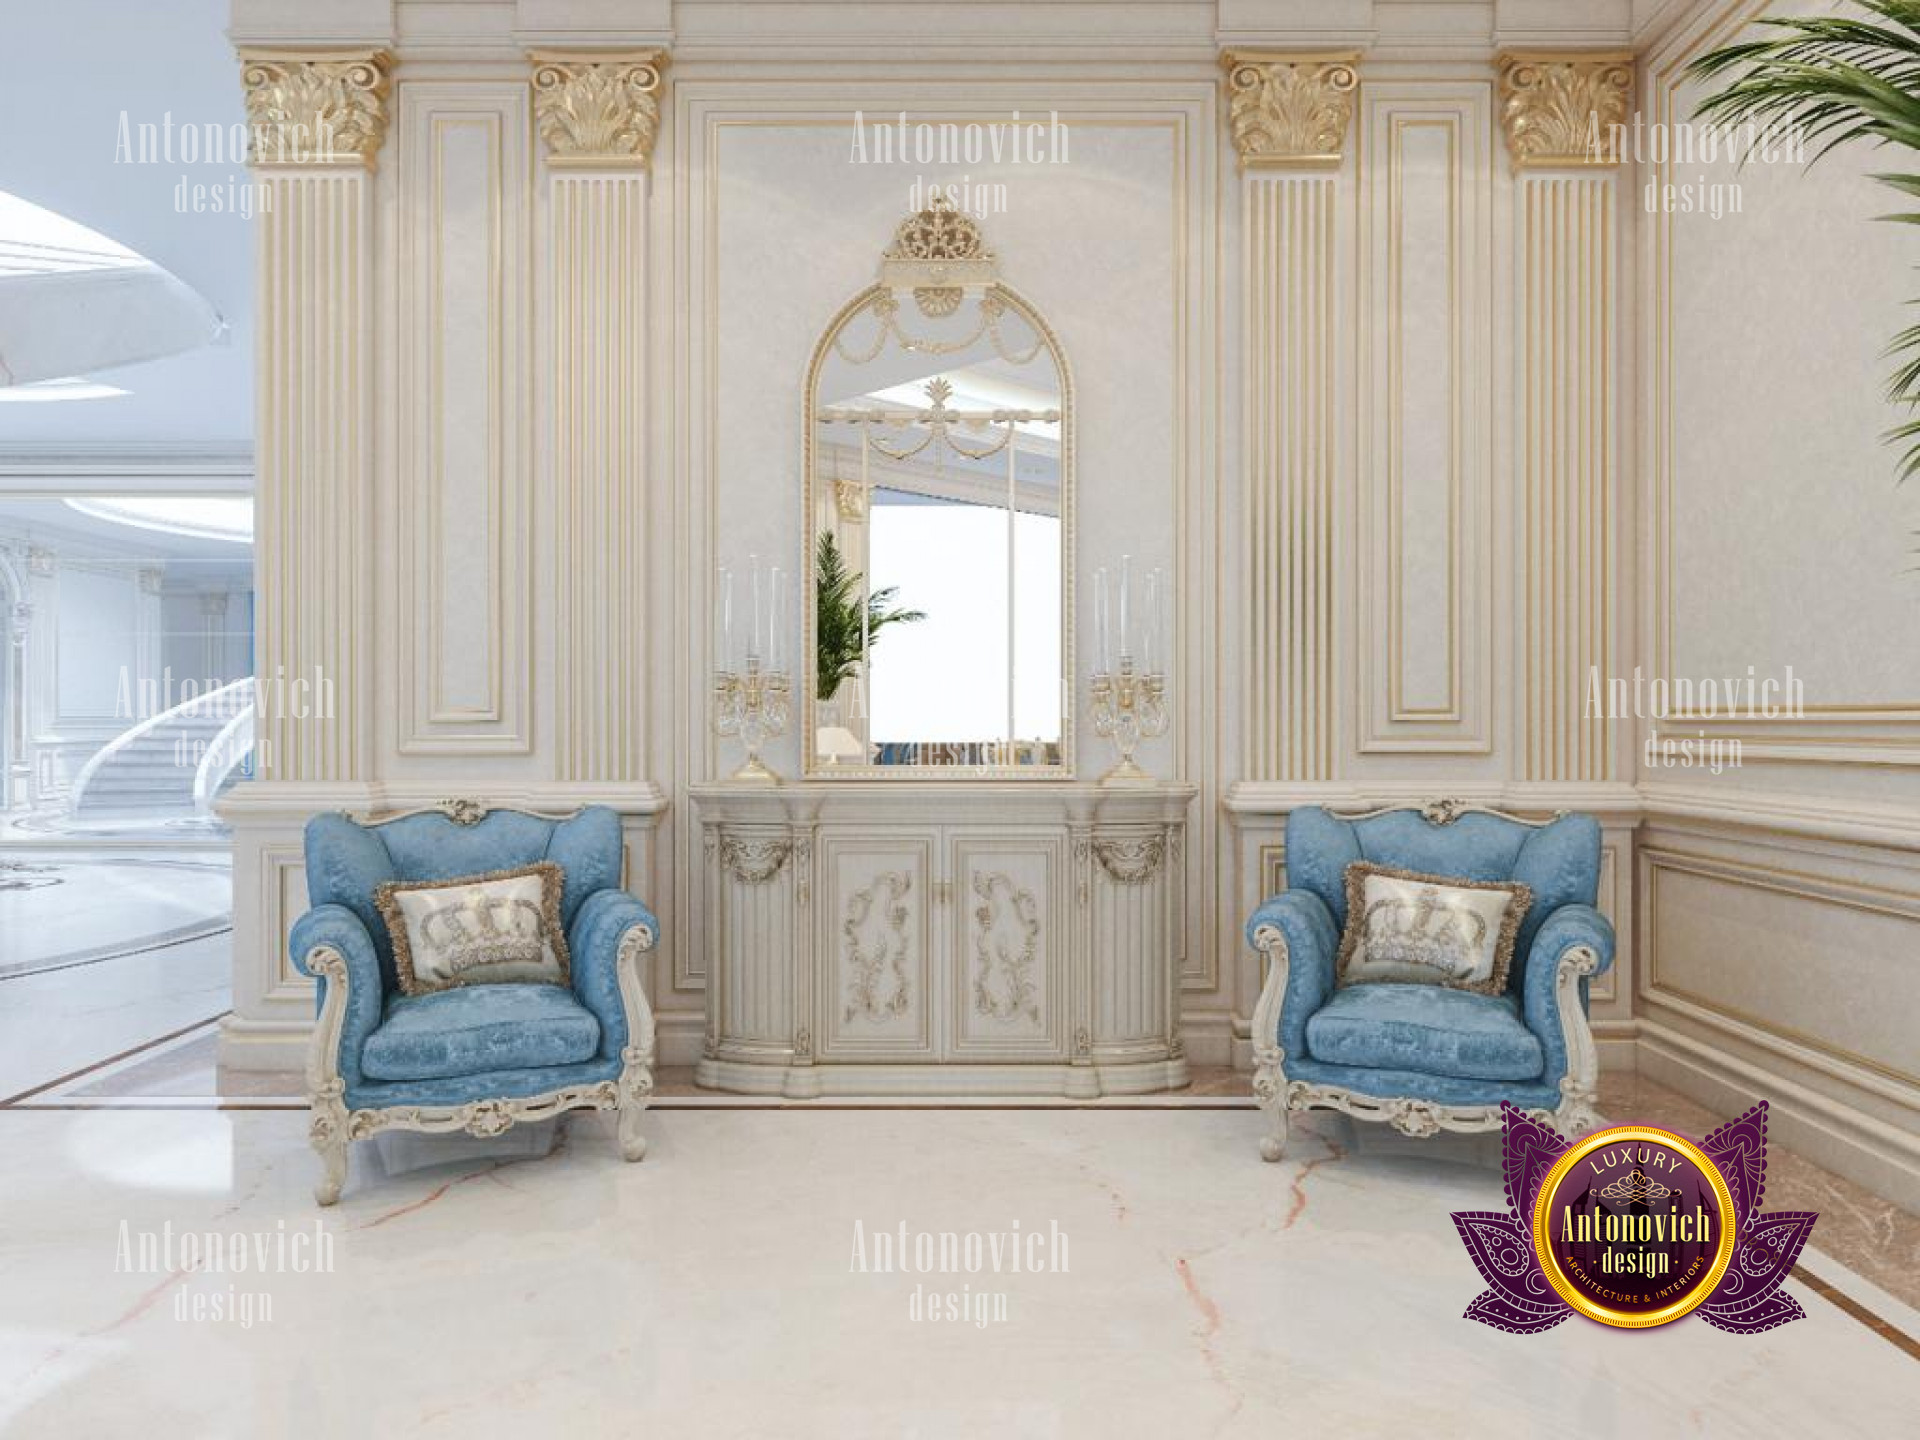 Luxury interior design company in Saudi Arabia